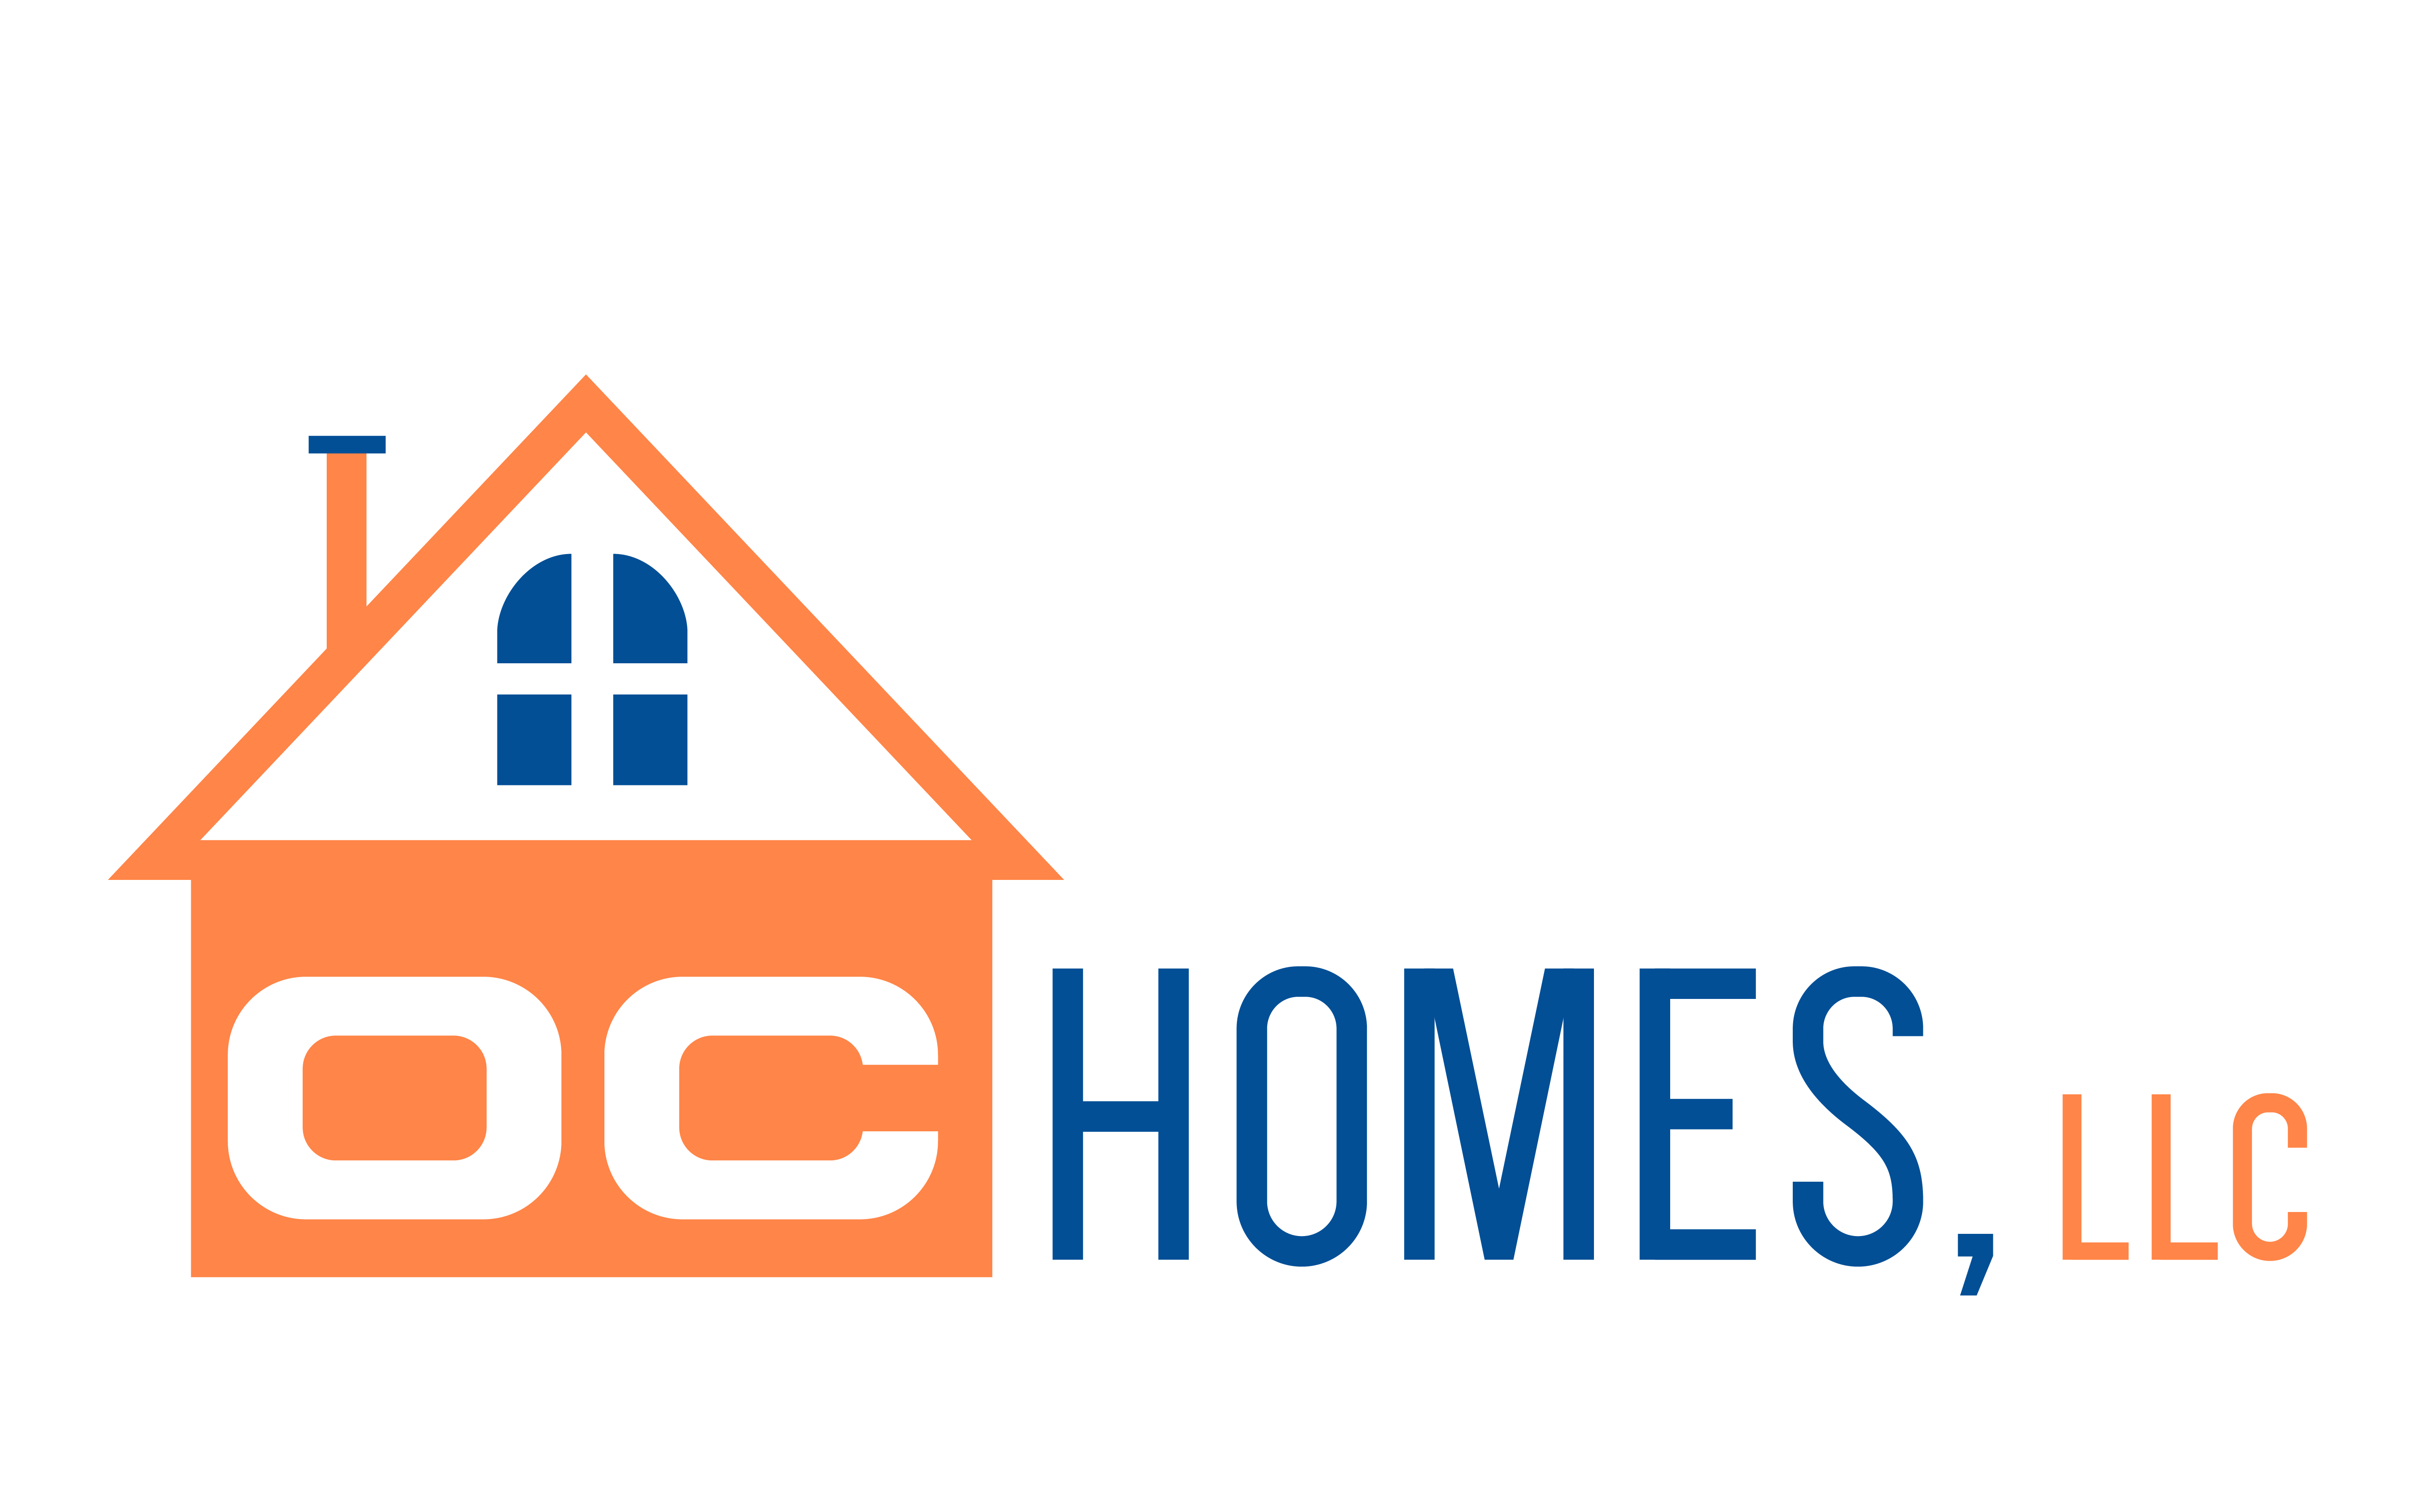 OC Homes, LLC